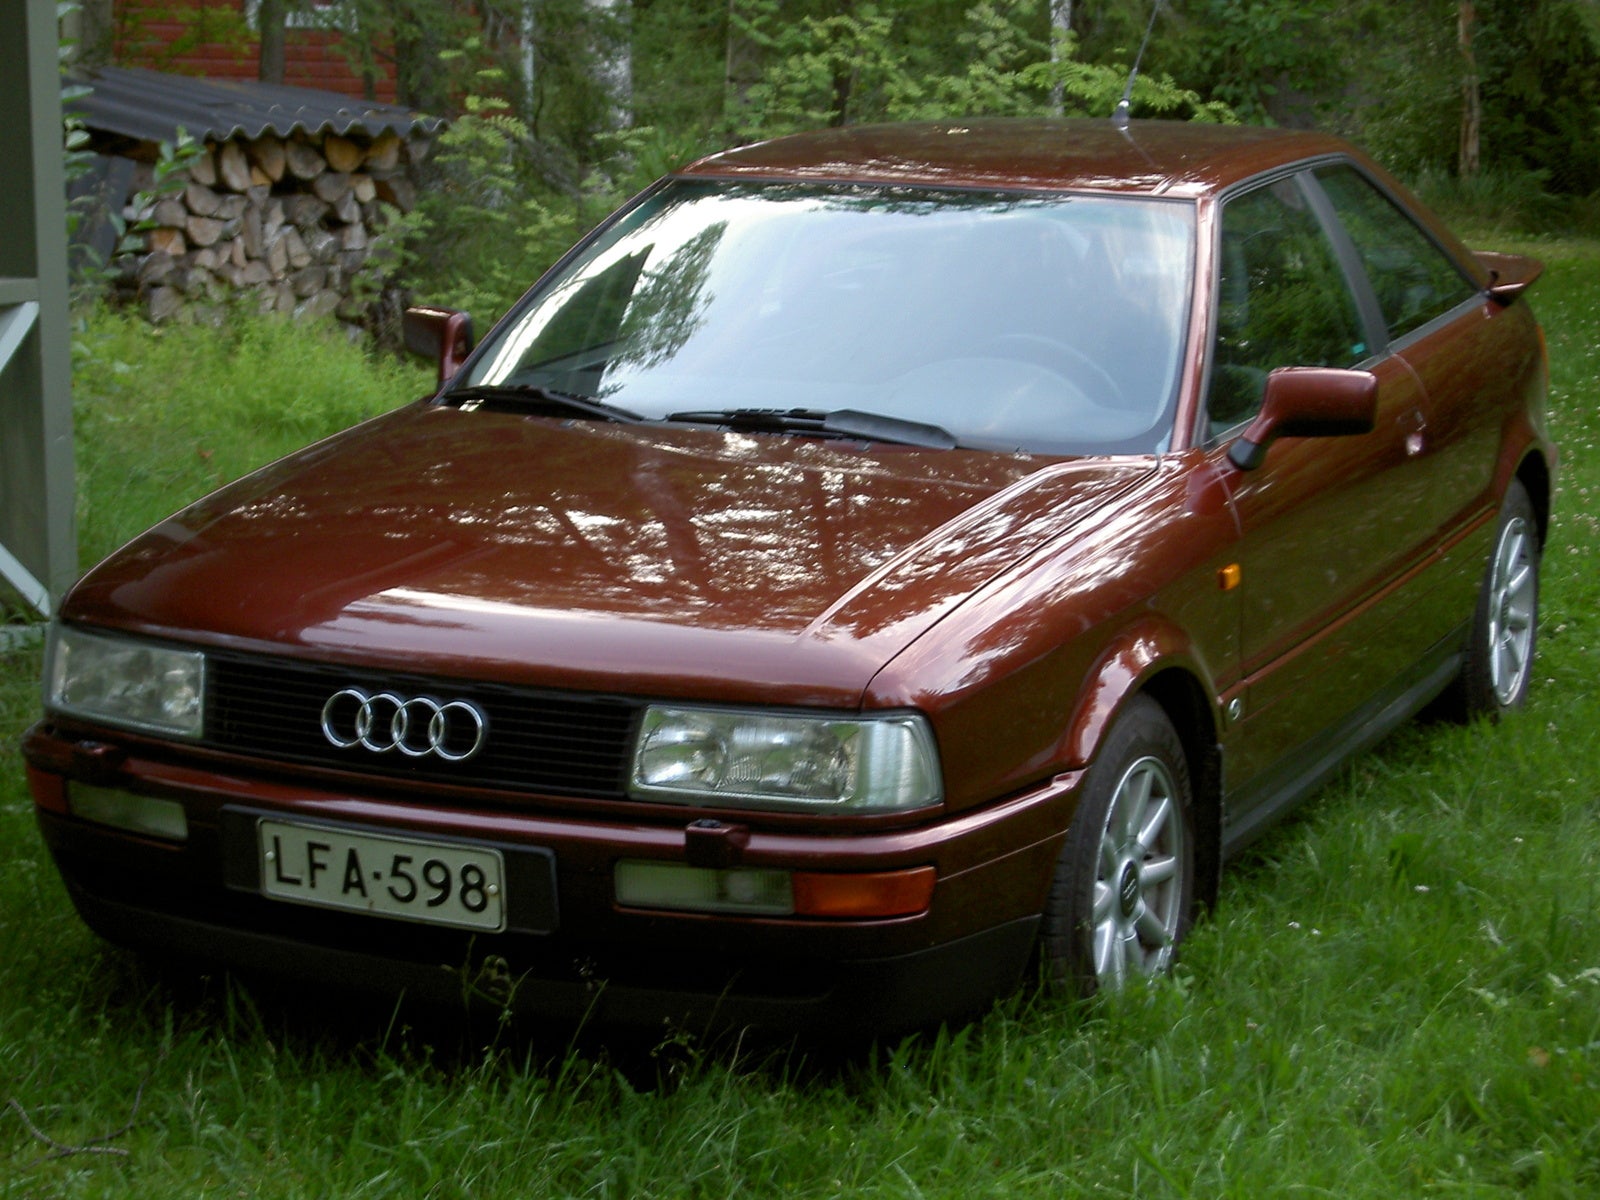 1990 Audi Coupe - Pictures - CarGurus